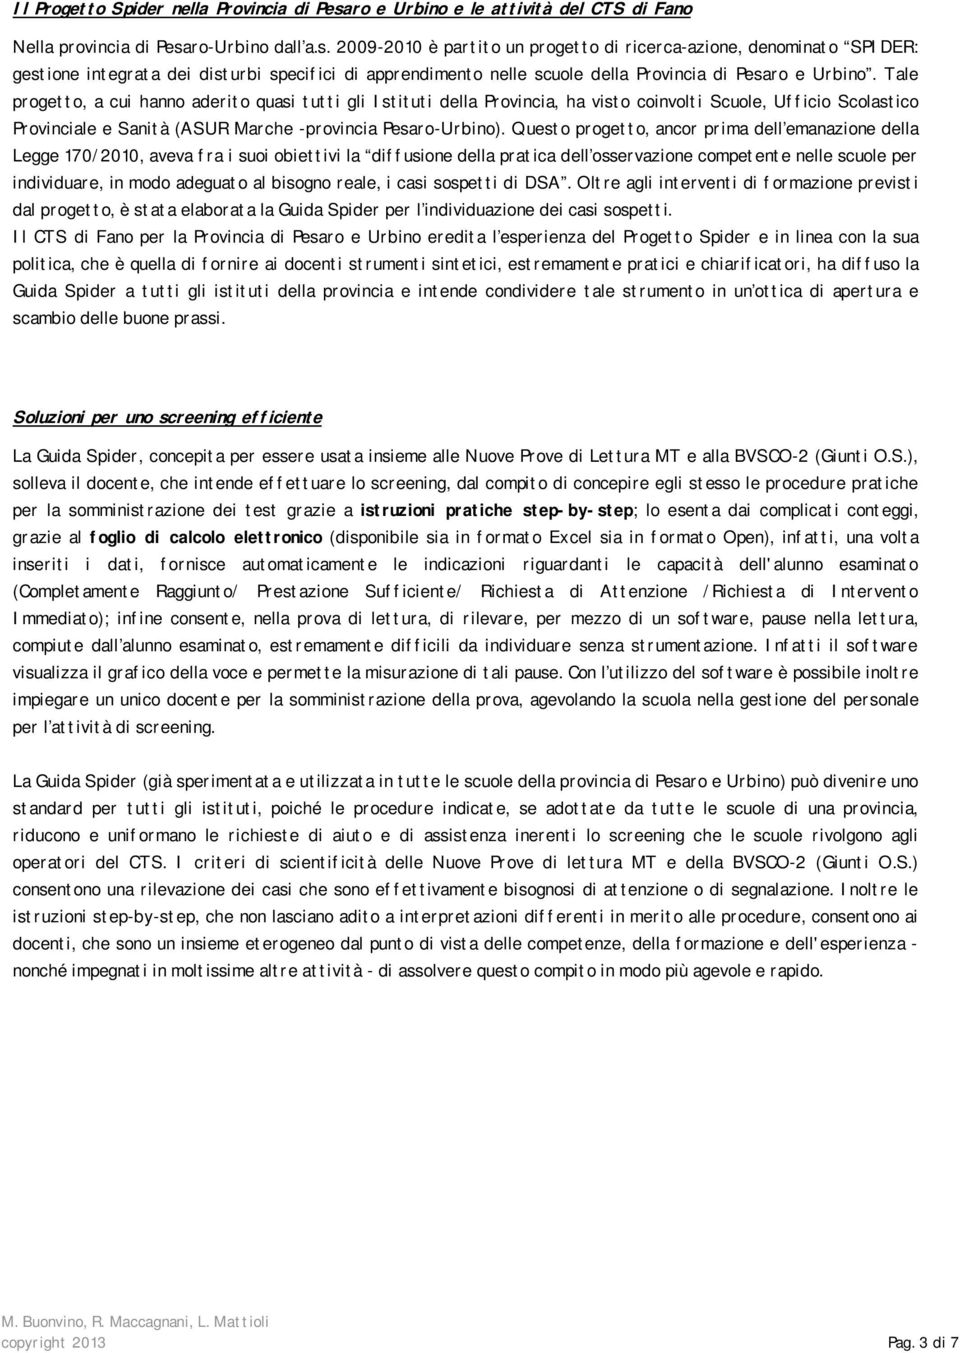 ro-Urbino dall a.s. 2009-2010 è partito un progetto di ricerca-azione, denominato SPIDER: gestione integrata dei disturbi specifici di apprendimento nelle scuole della Provincia di Pesaro e Urbino.